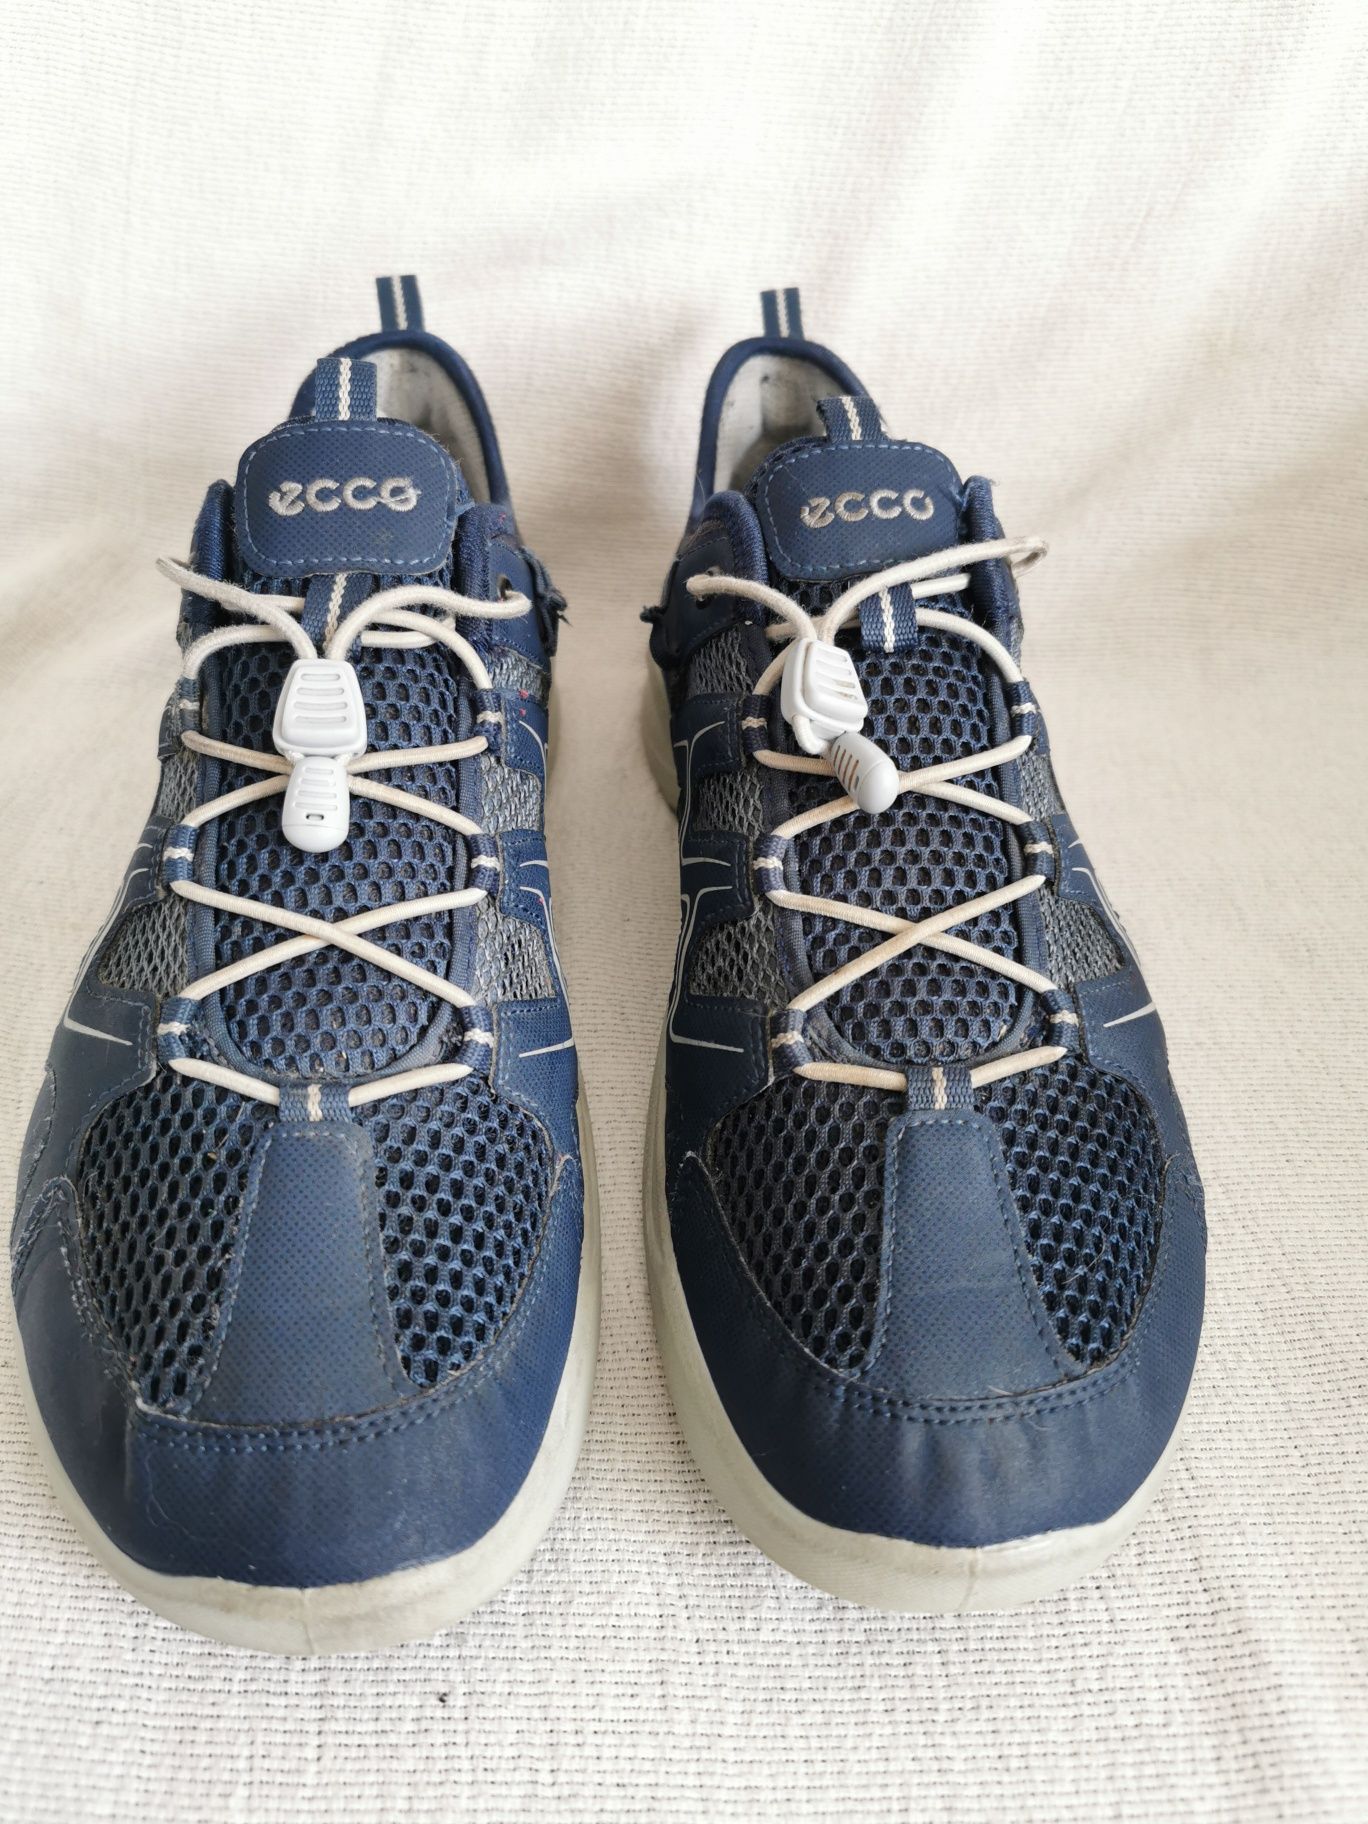 Ecco Terracruise przewiewne buty trekkingowe turystyczne sportowe 41